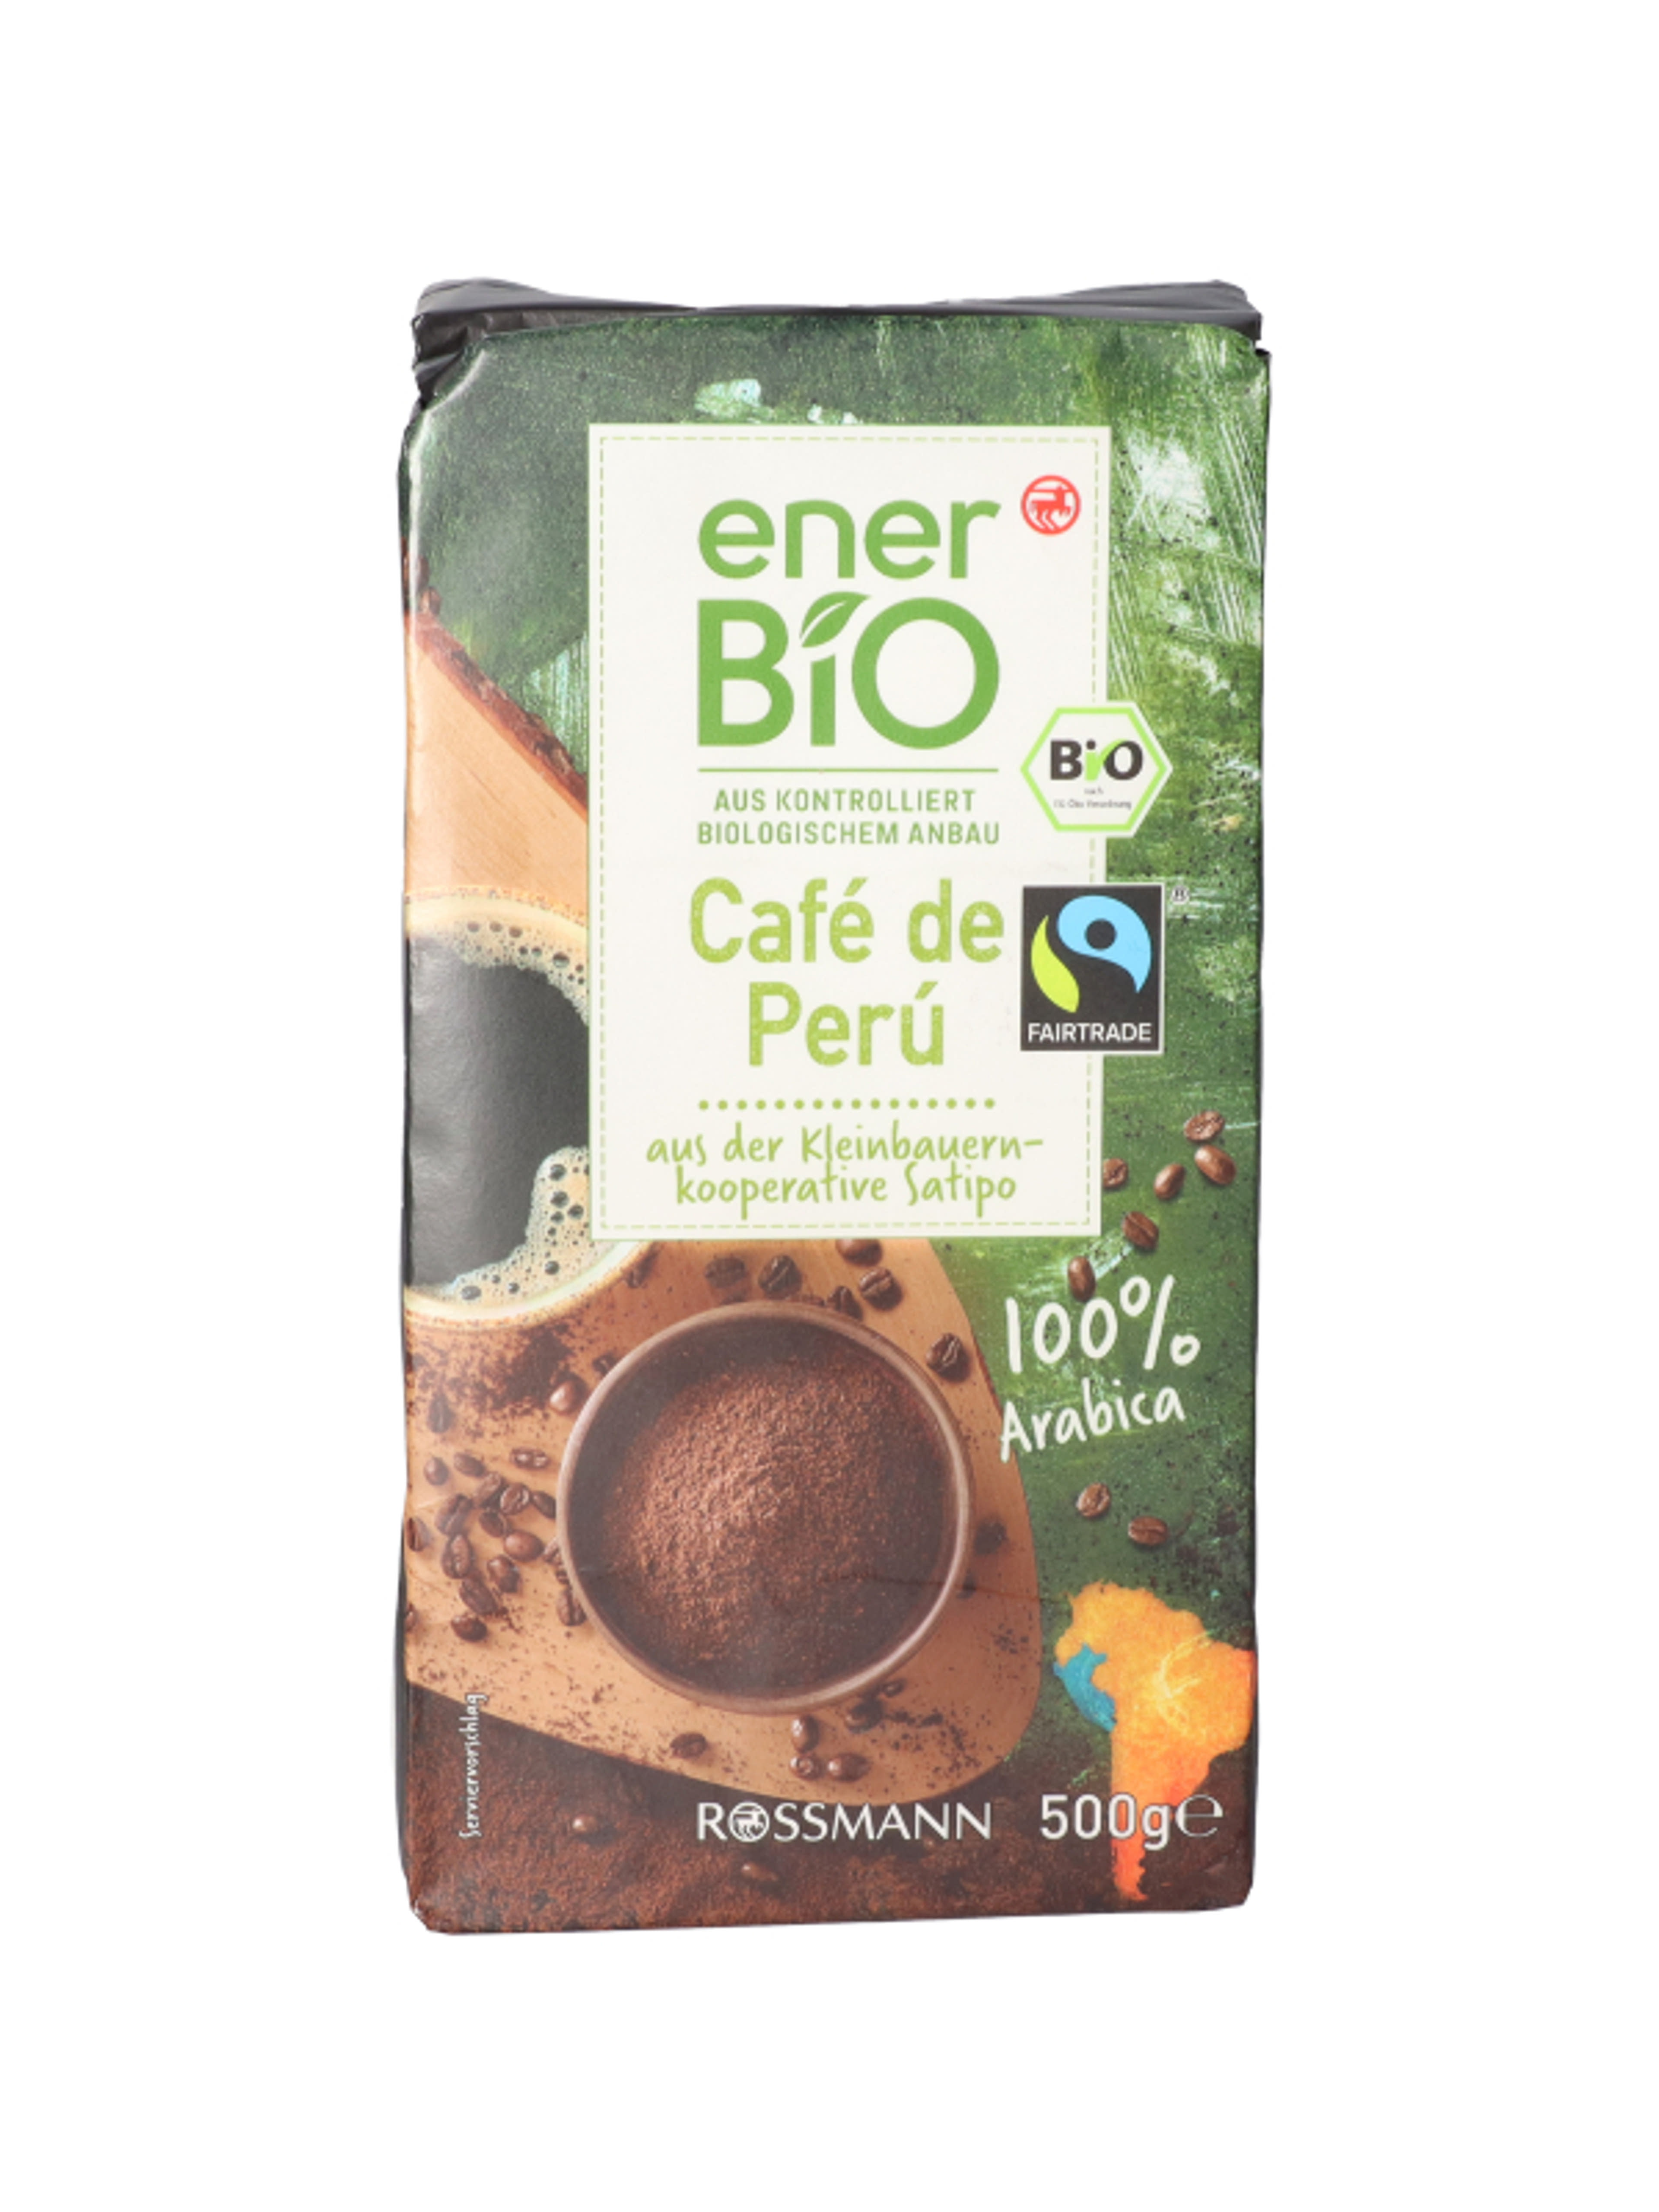 enerBio Cafe de Peru kávé - 500 g
100% bio arabica kávé
természetes módon vegán